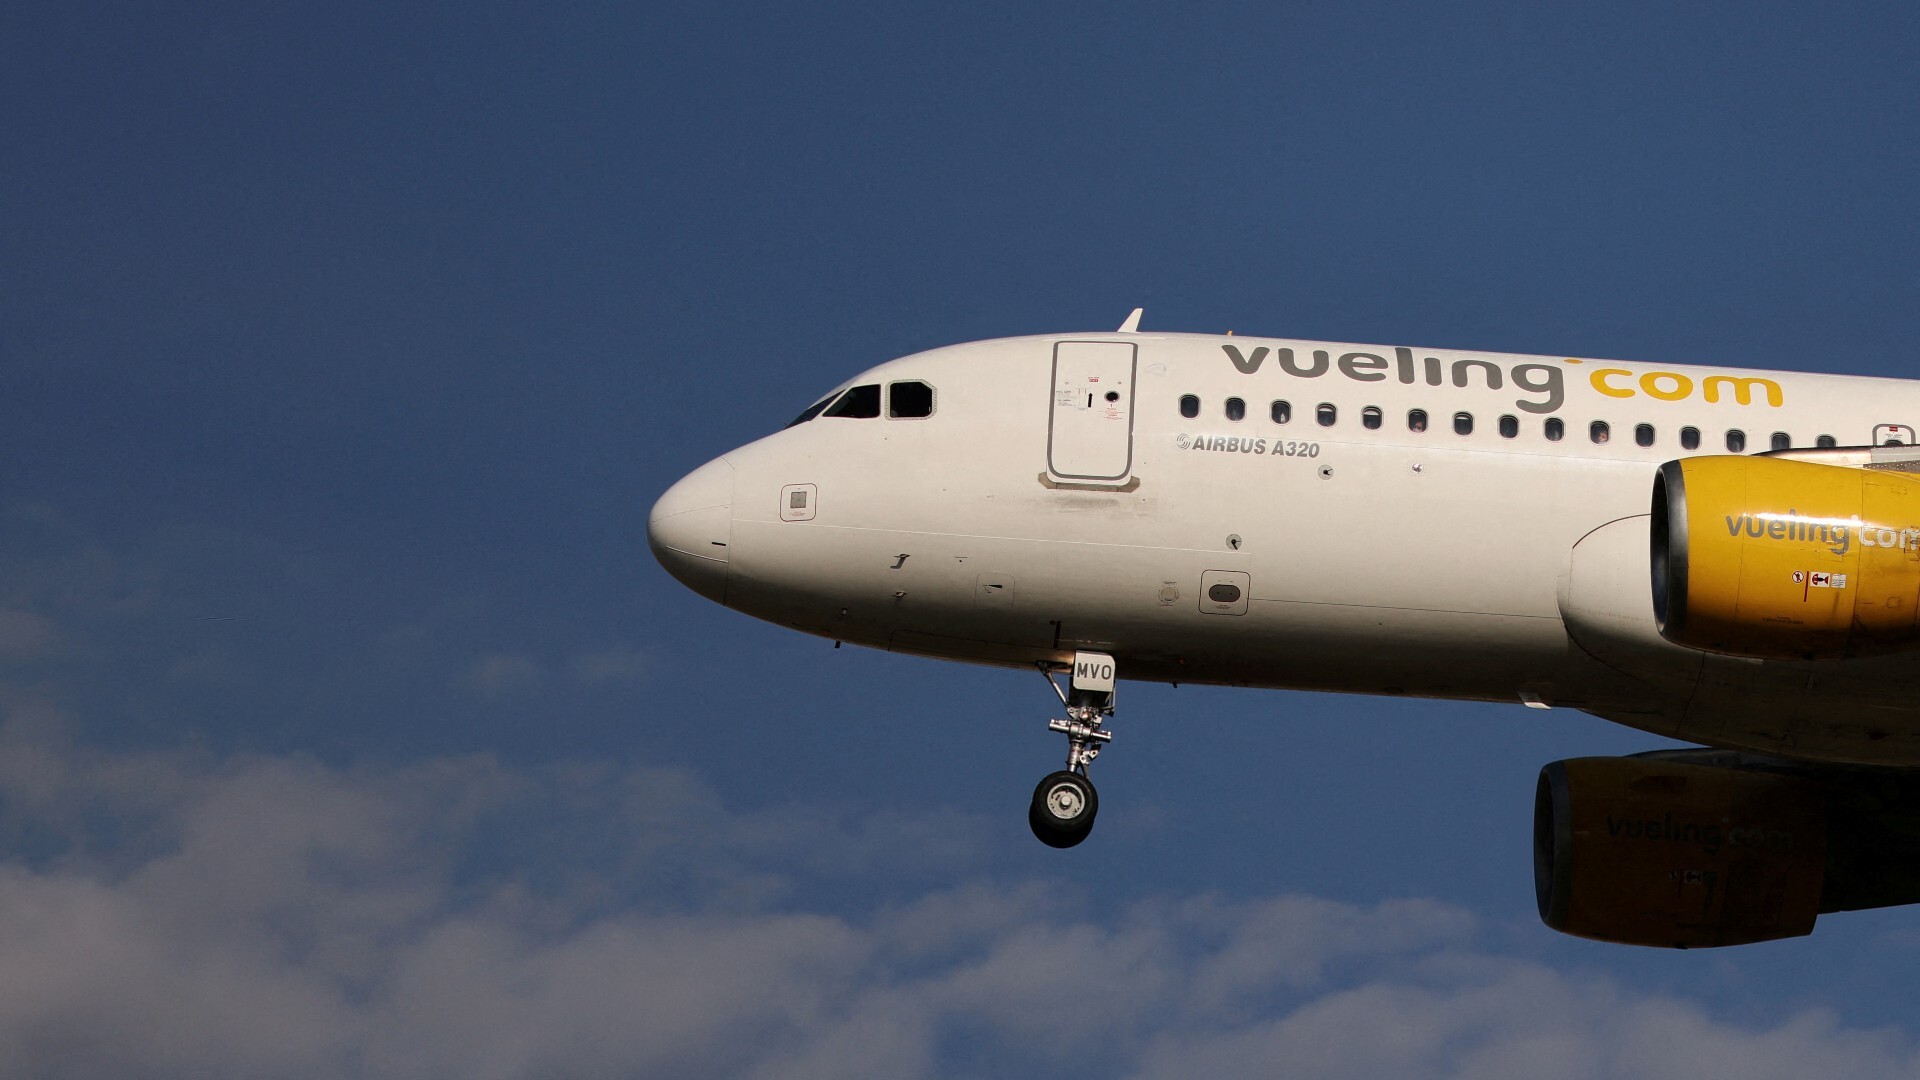 Huelga de tripulantes Vueling: consulta los vuelos cancelados